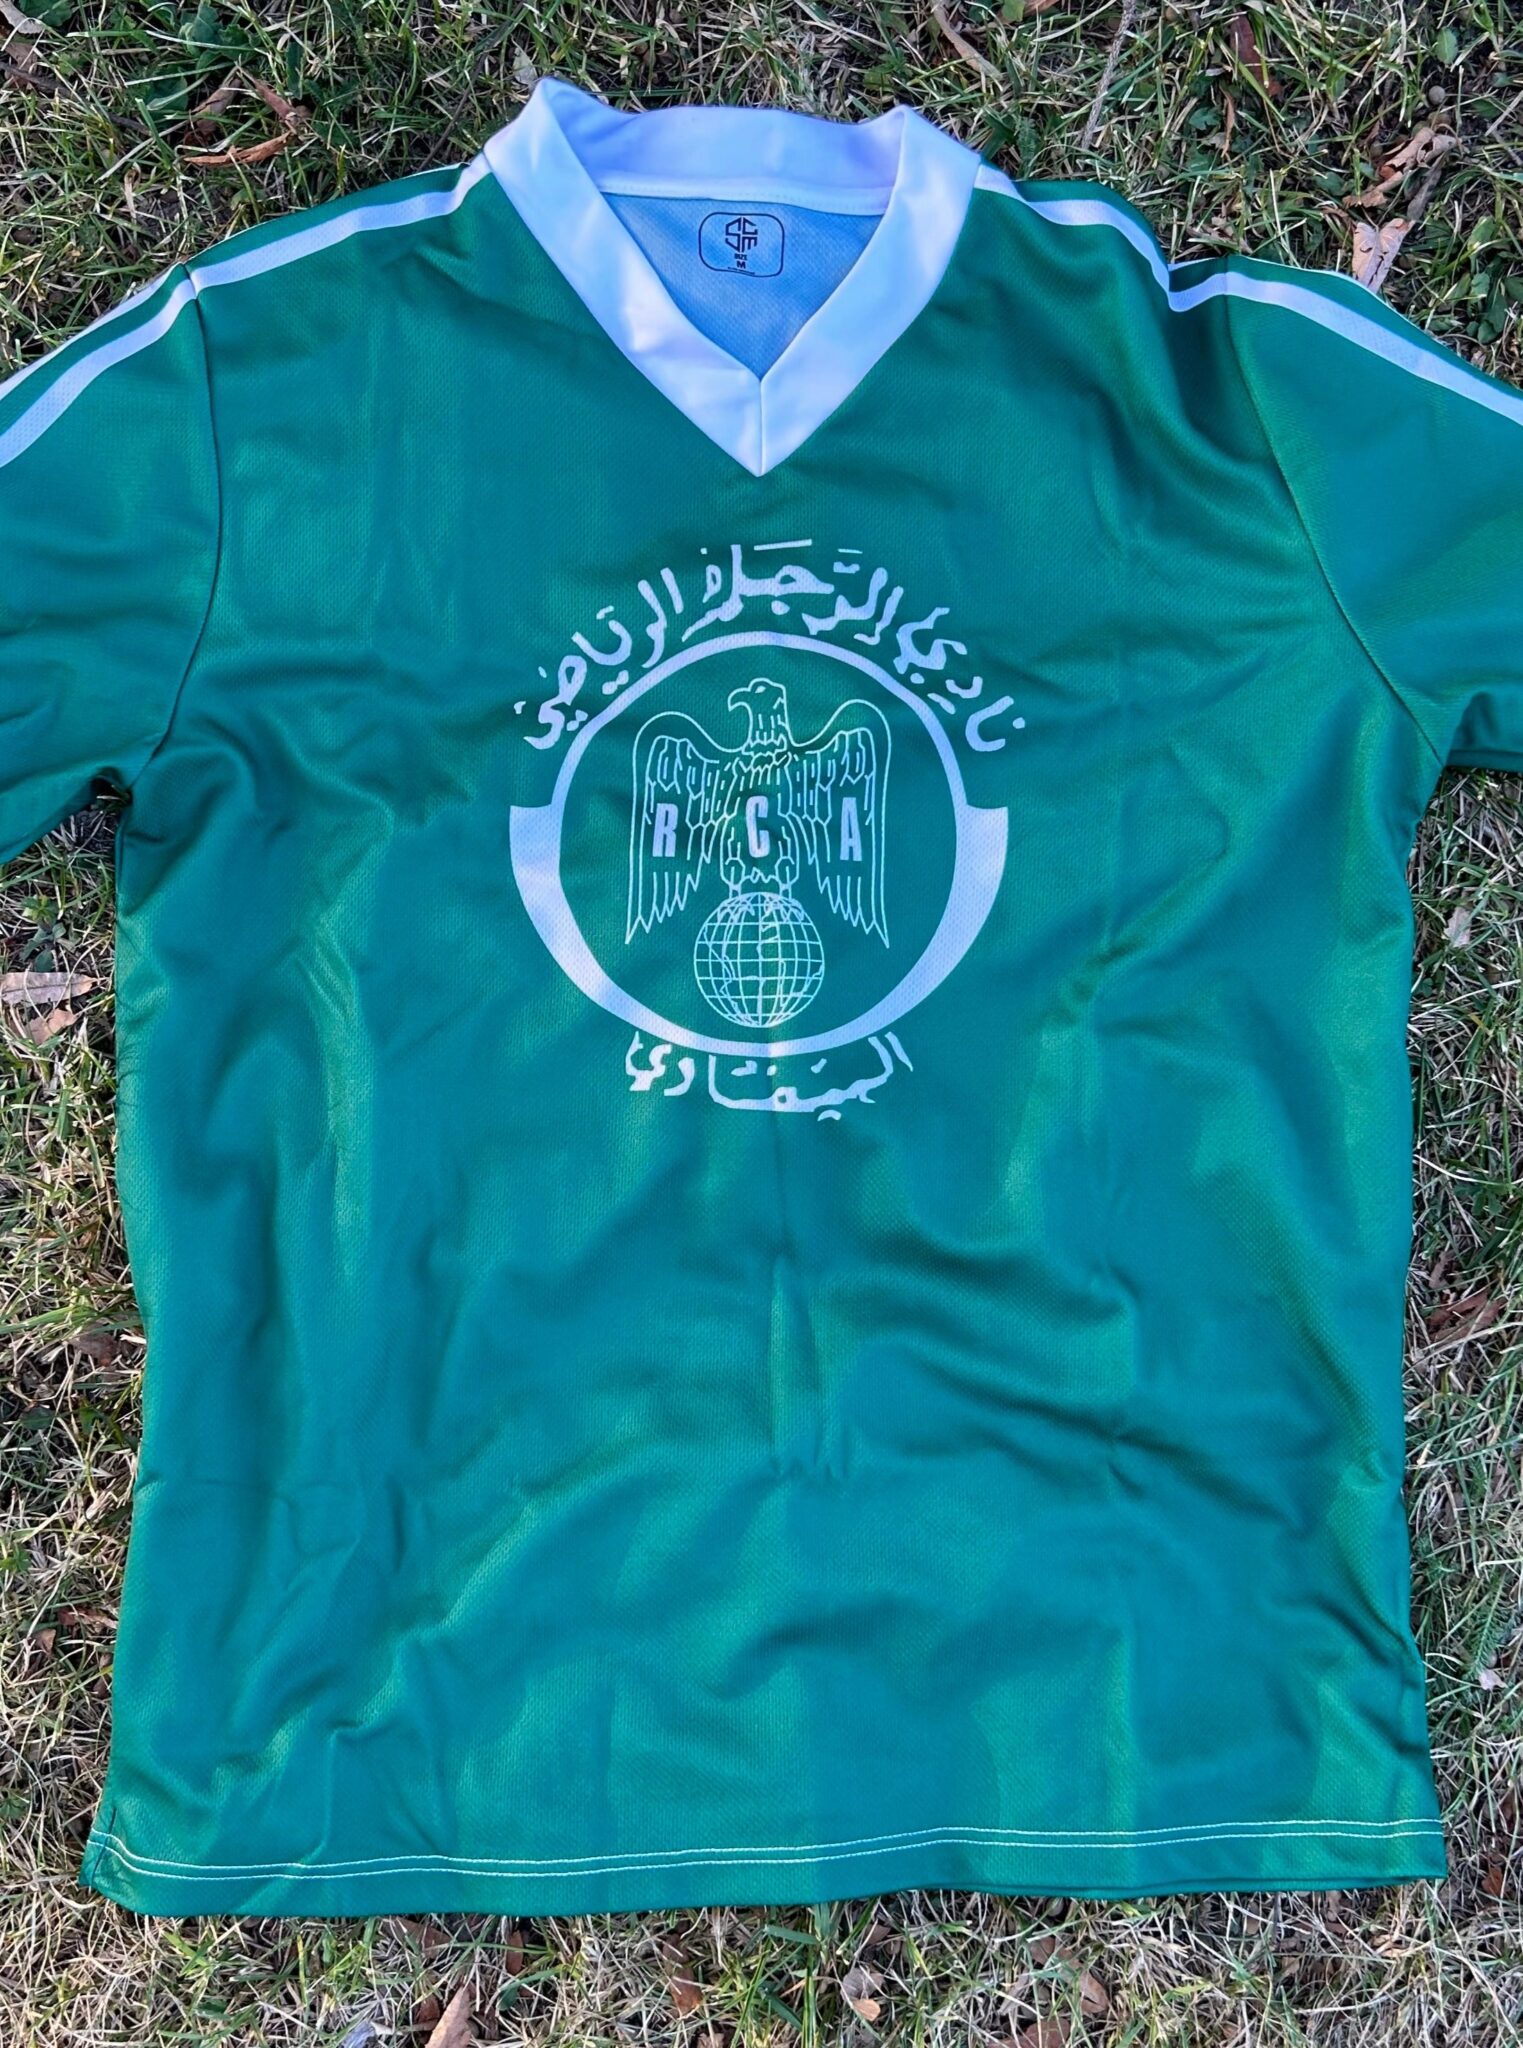 Raja Casablanca Football Jersey 1984/1985 : "Green Eagles" Morocco نادي الرجاء الرياضي - Sport Club Memories